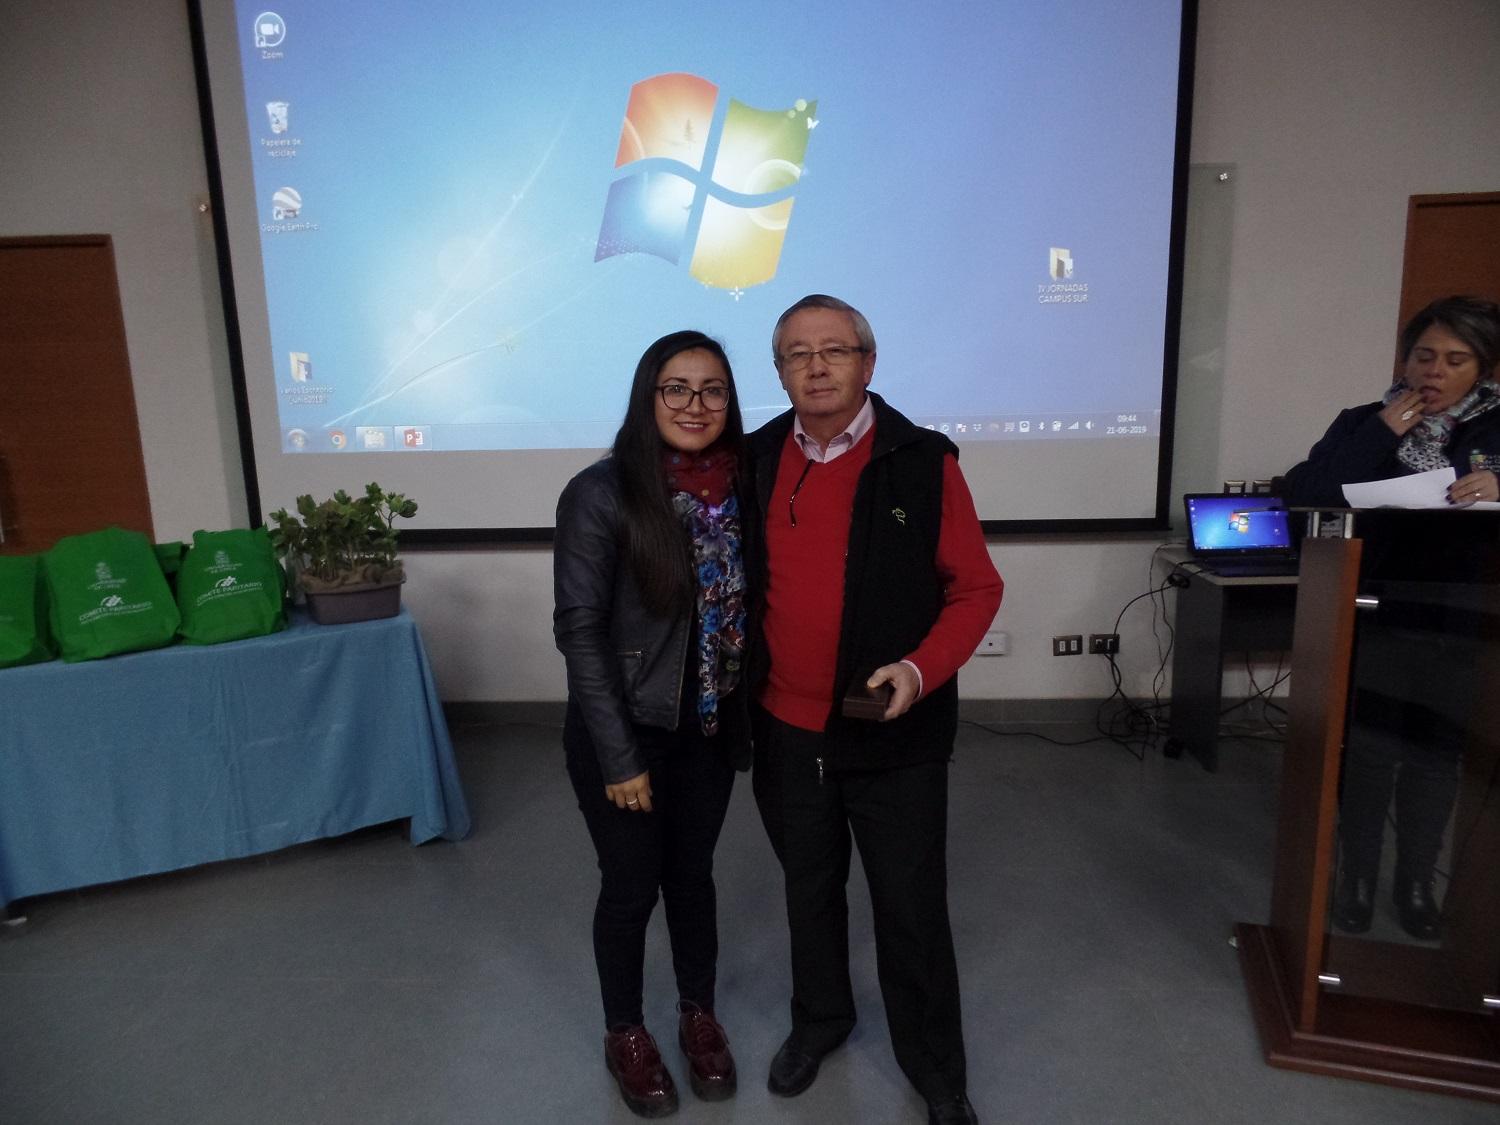 El Dr. Mario Acuña, académico de Favet, fue reconocido por su compromiso y participación activa en el comité Paritario. En la imagen, el profesor junto a la prevencionista Tamara Nuñez.